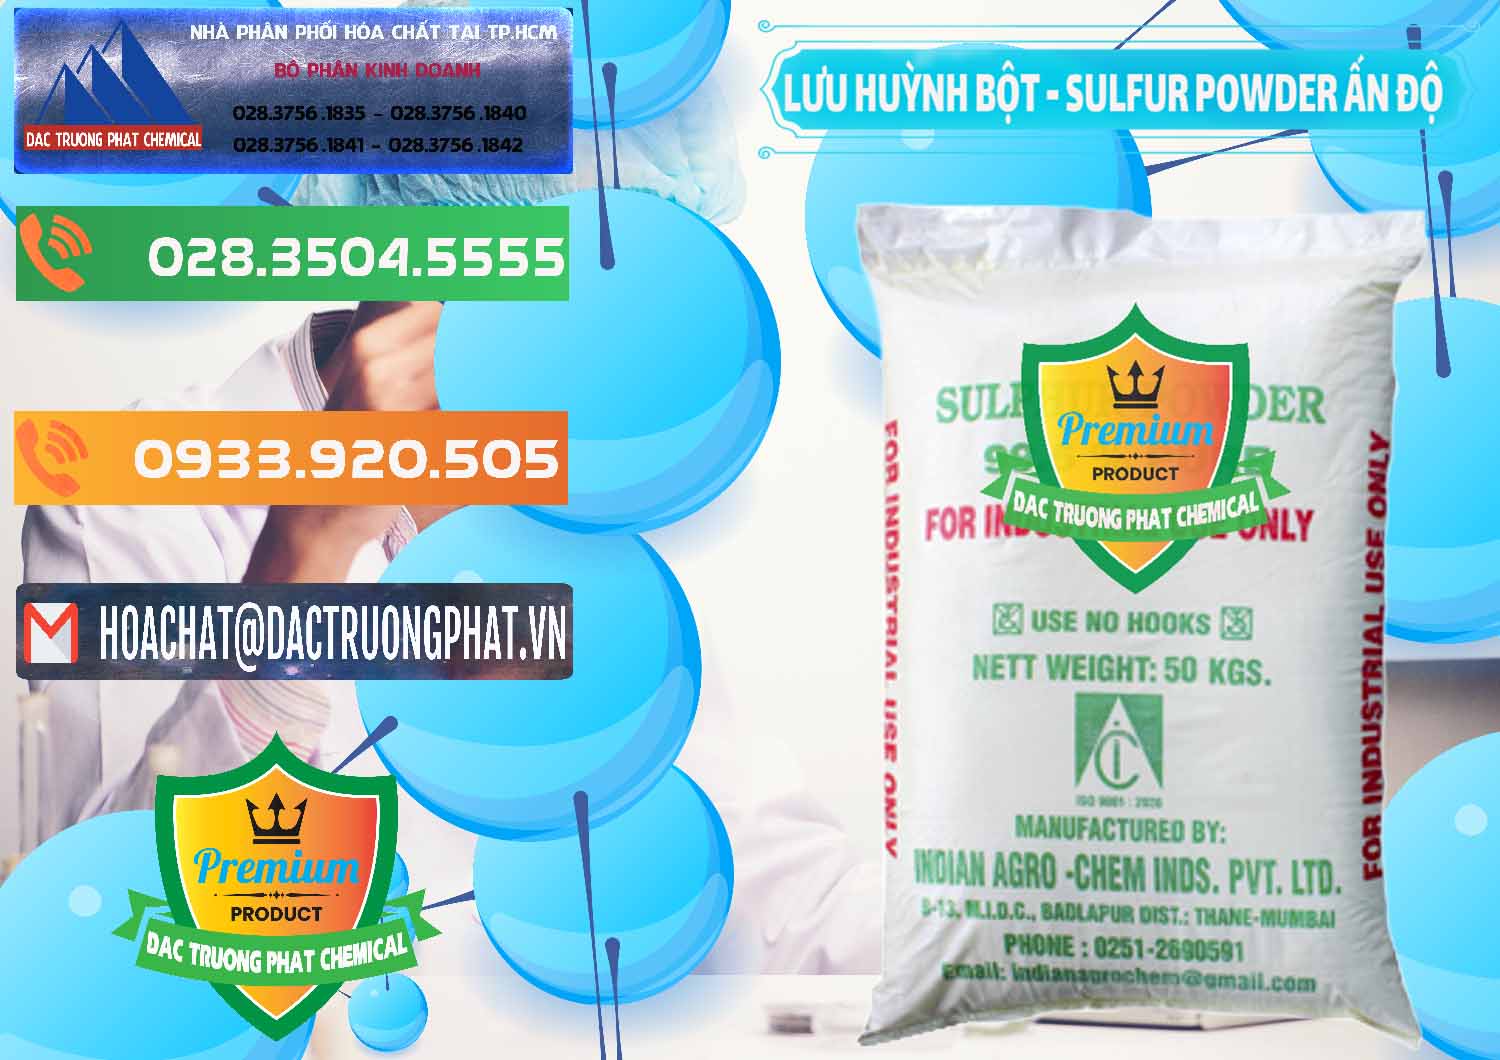 Cty kinh doanh _ bán Lưu huỳnh Bột - Sulfur Powder Ấn Độ India - 0347 - Công ty nhập khẩu - phân phối hóa chất tại TP.HCM - hoachatxulynuoc.com.vn